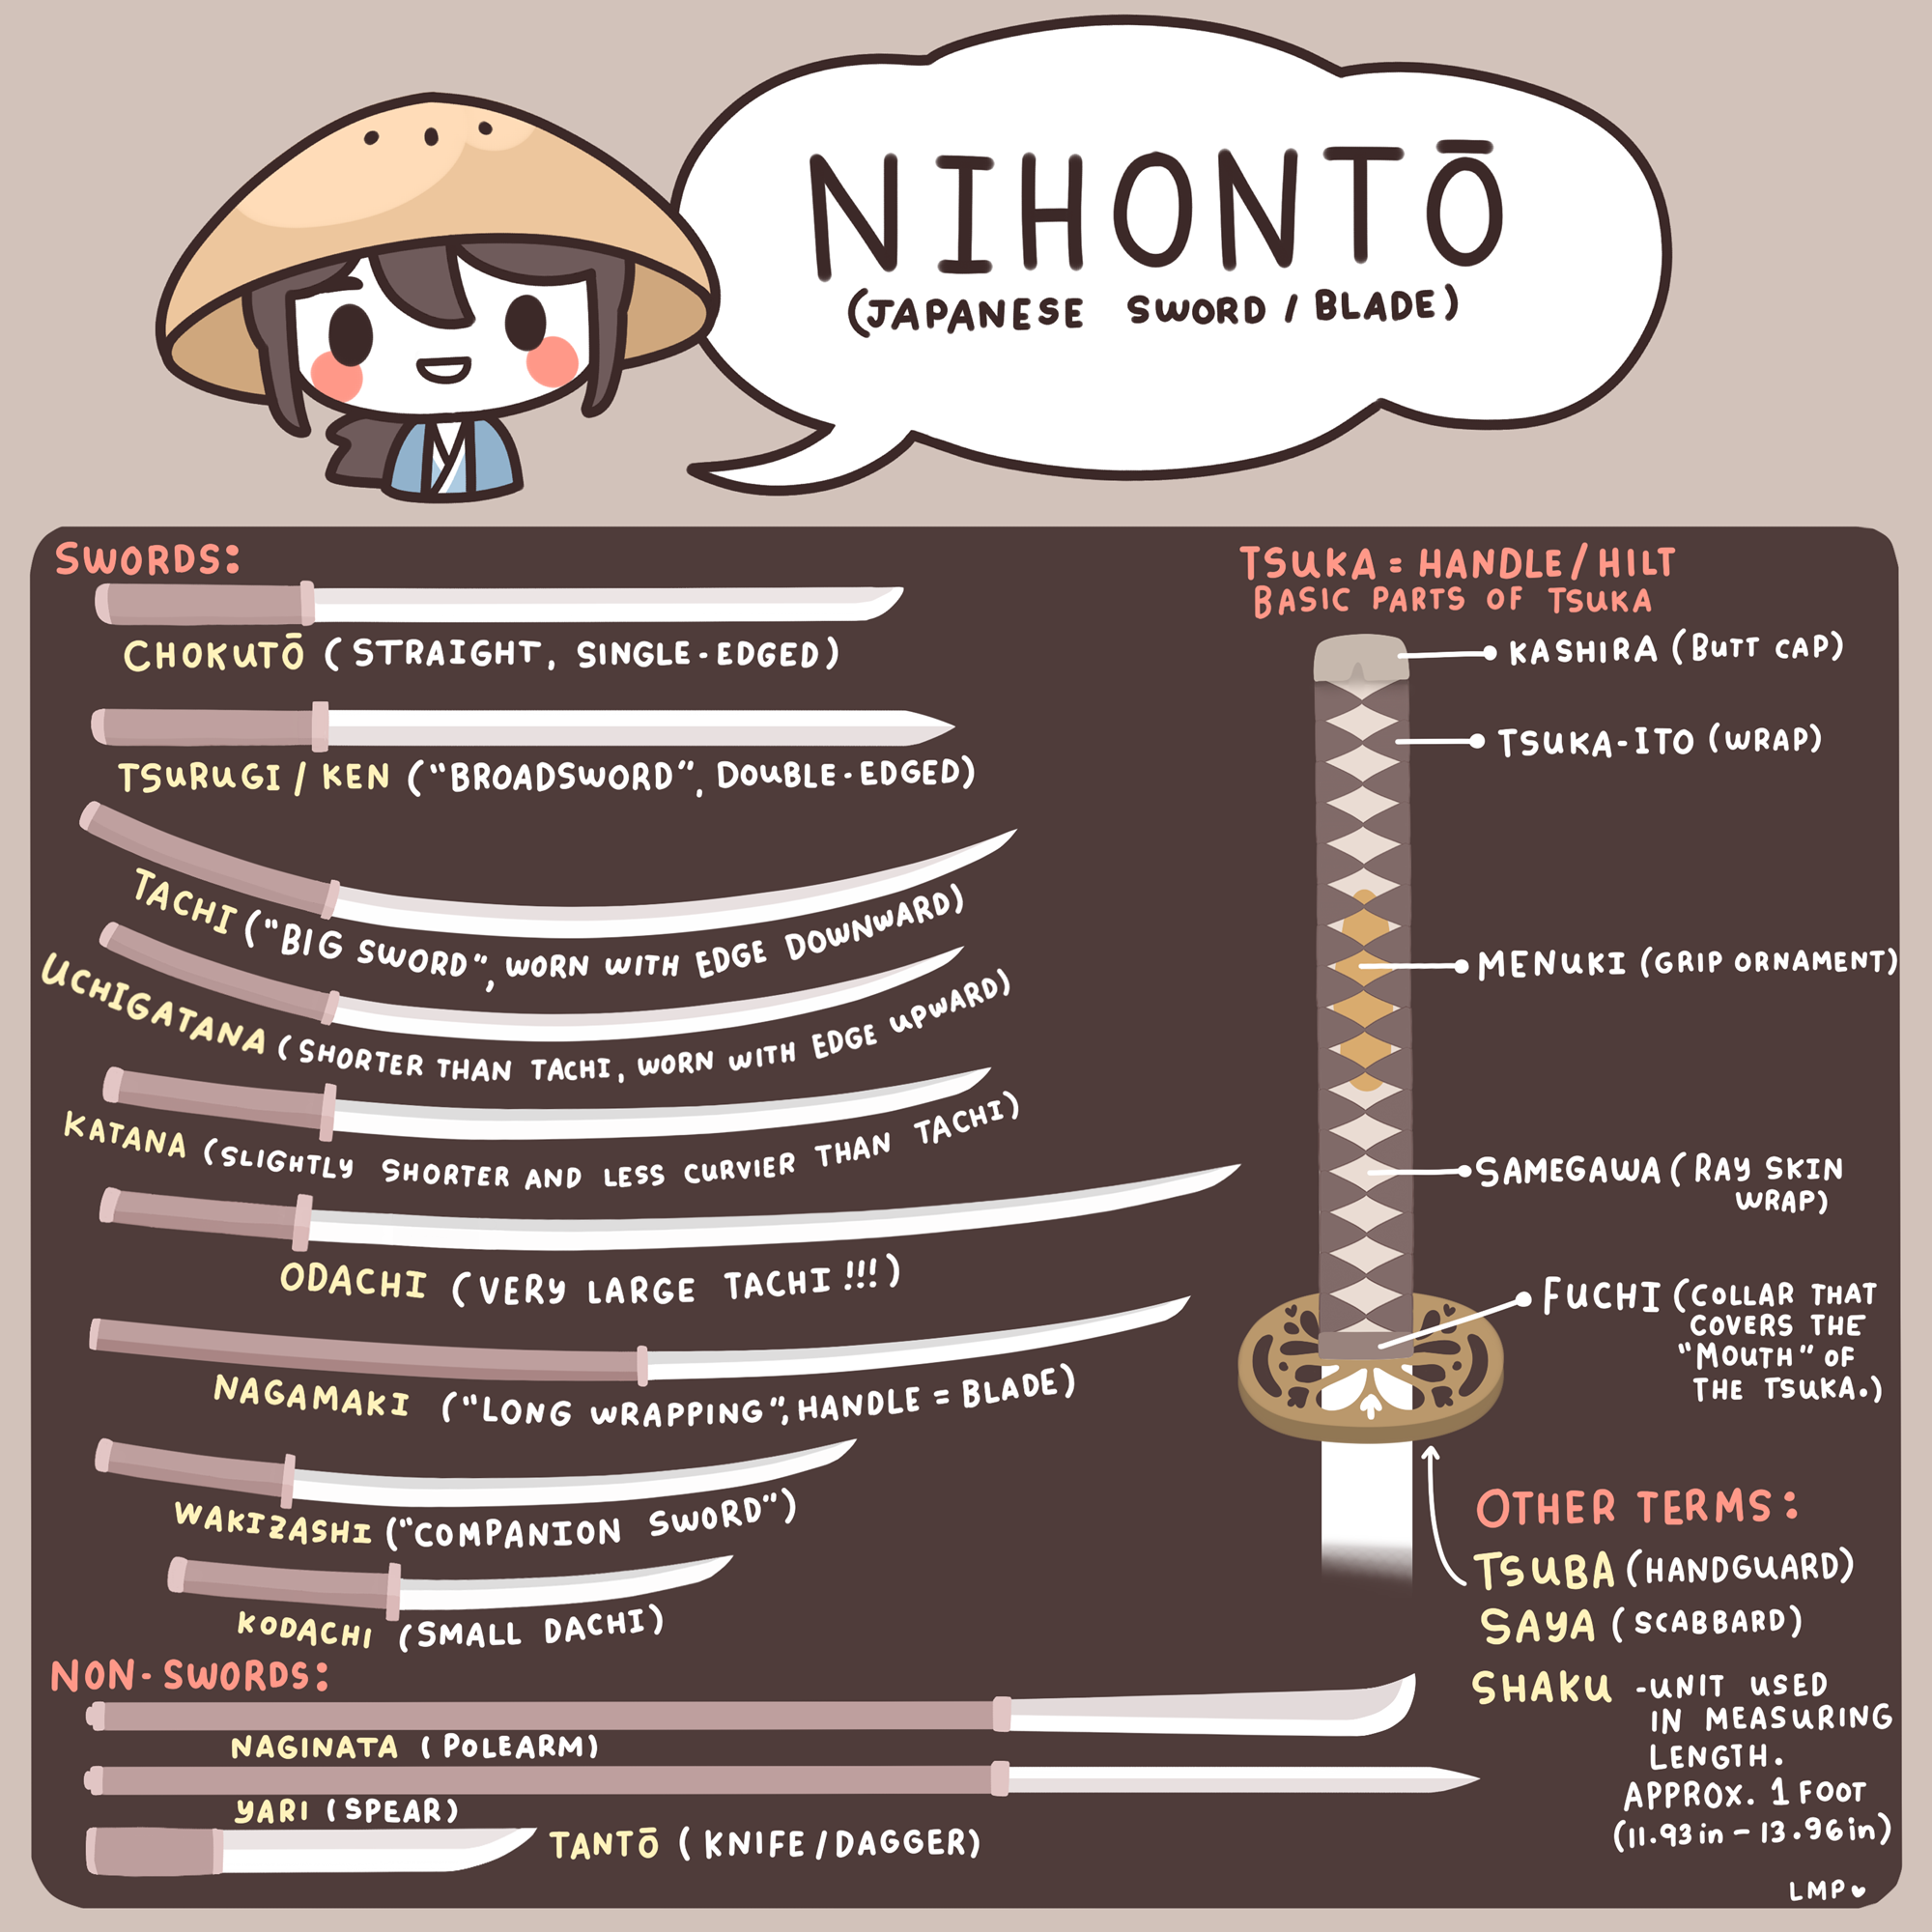 Tìm hiểu về văn hóa Nhật Bản - Thanh kiếm Nihonto